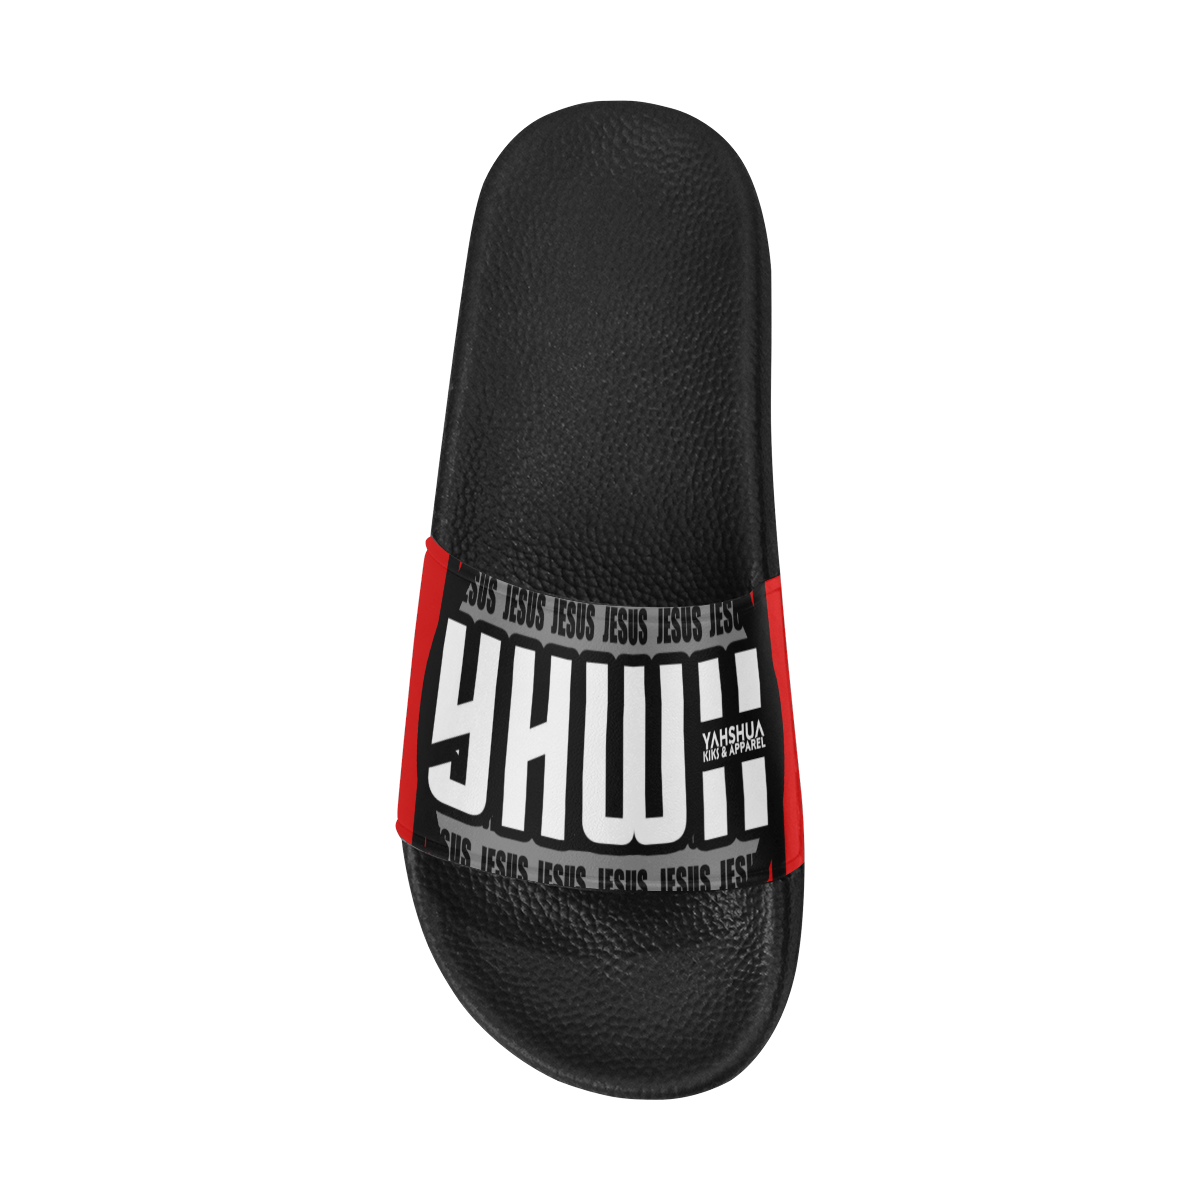 Red Men's Slide Sandals/Large Size (Model 057)